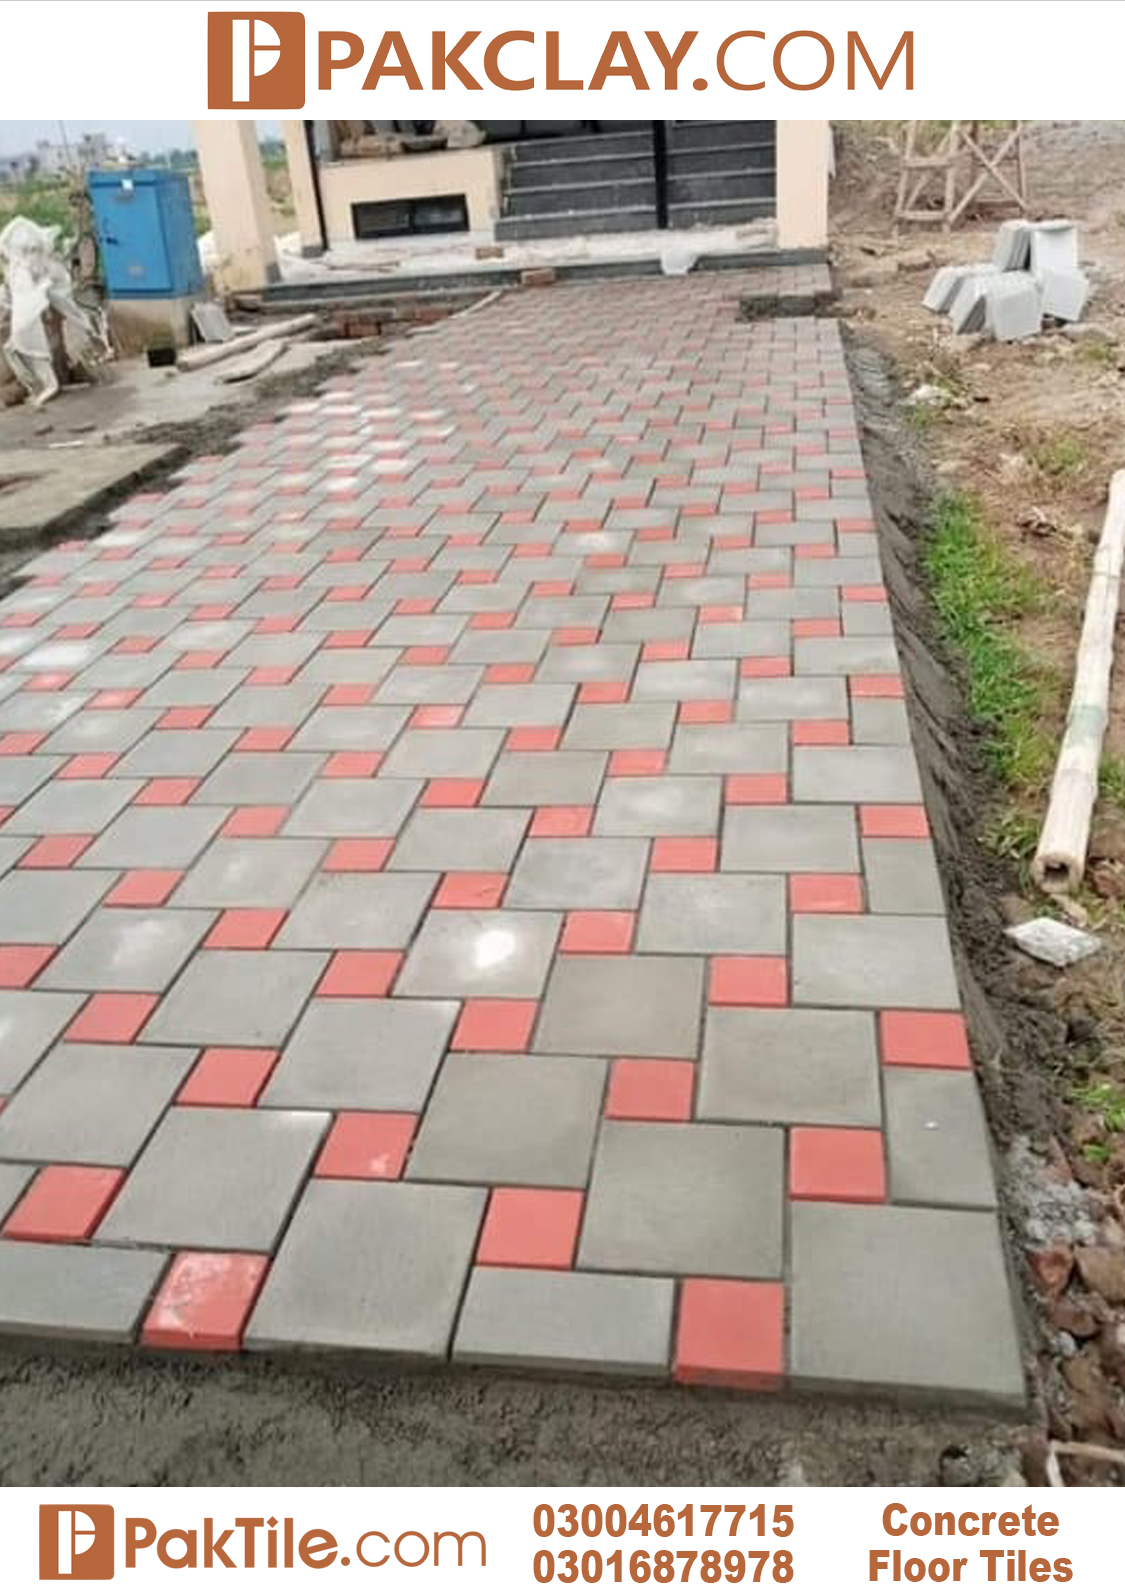 Outdoor Concrete Floor Tiles Price